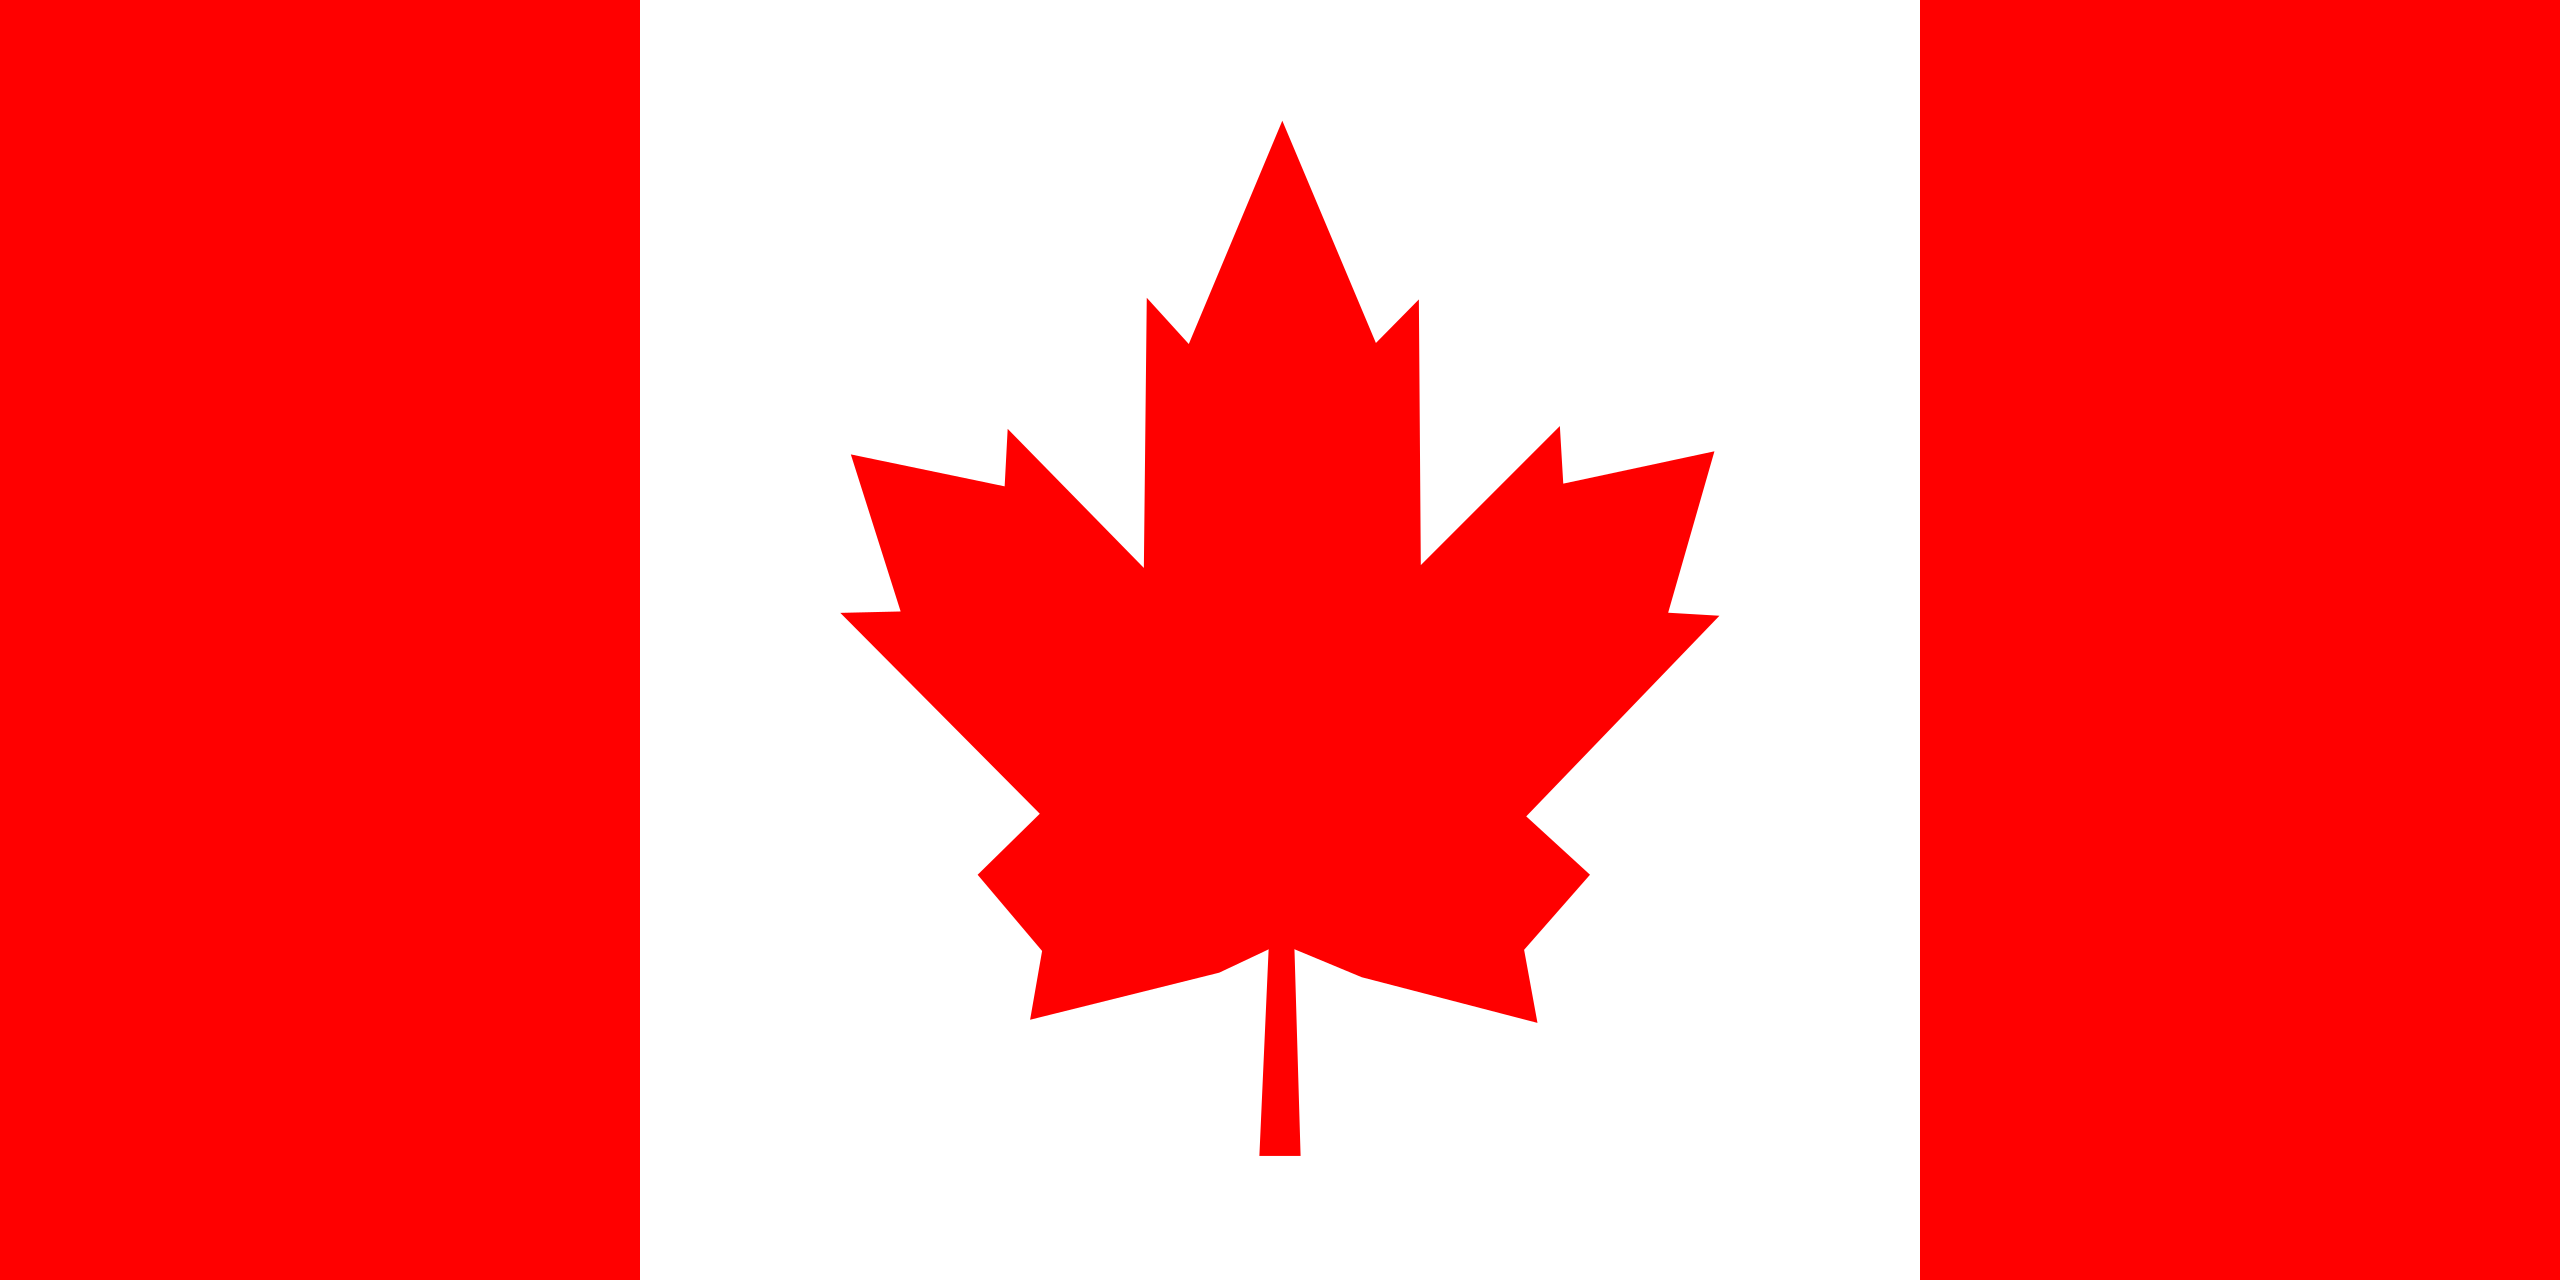 ธงชาติแคนาดา